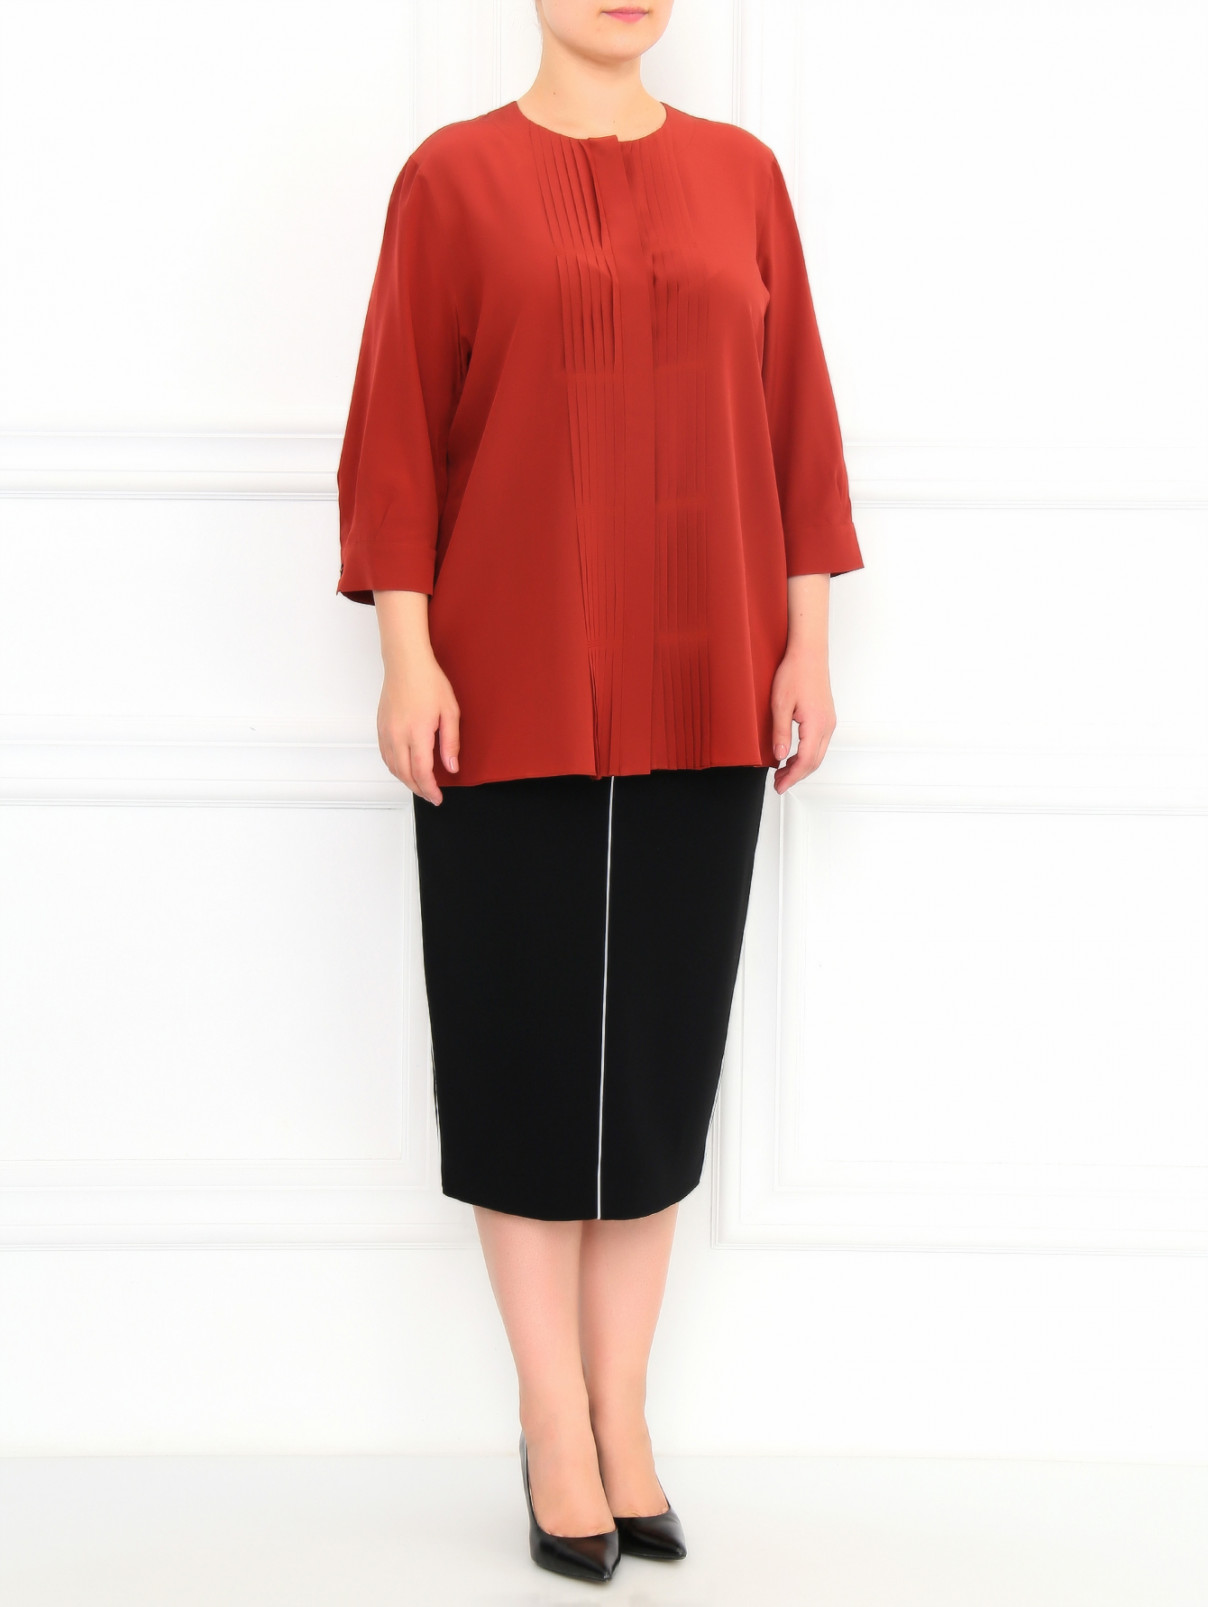 Блуза из шелка с декором Marina Rinaldi  –  Модель Общий вид  – Цвет:  Коричневый